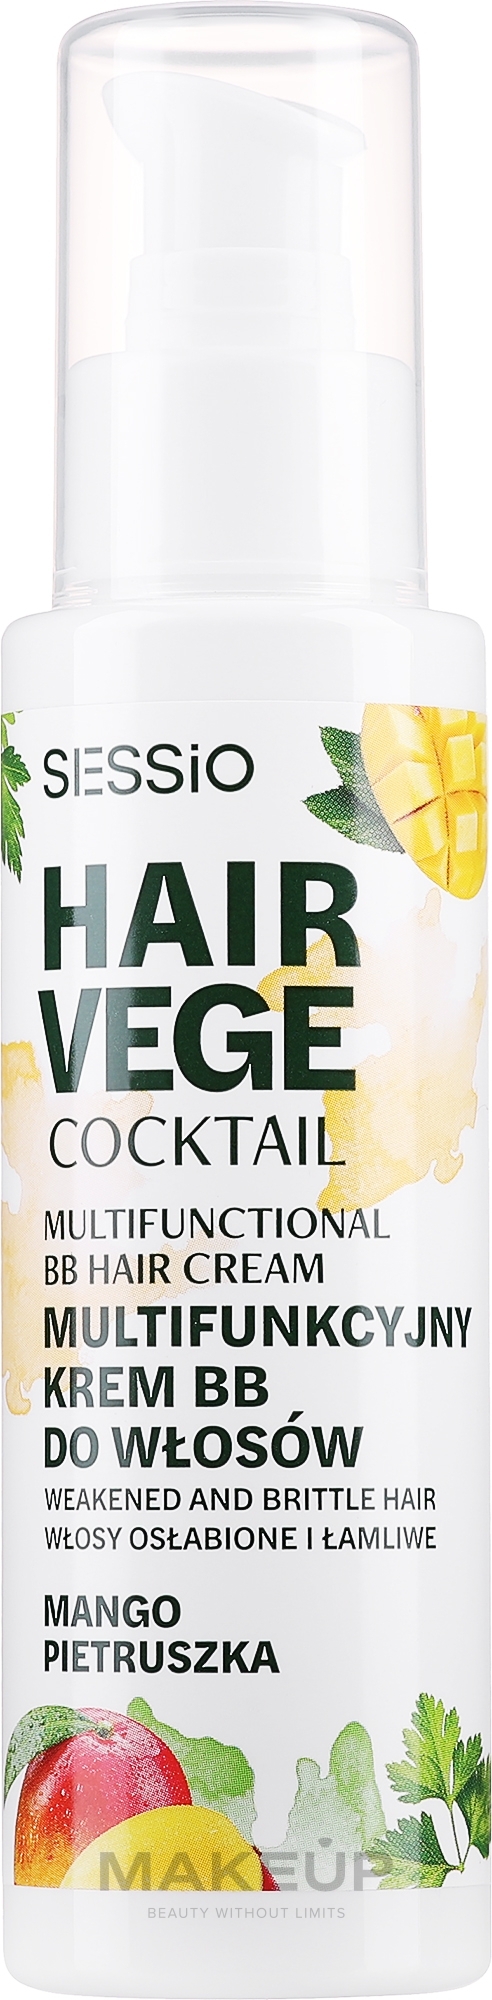 Multifuncyjny krem BB do włosów Mango - Sessio Hair Vege Cocktail Multifunctional BB Hair Crem — Zdjęcie 100 g